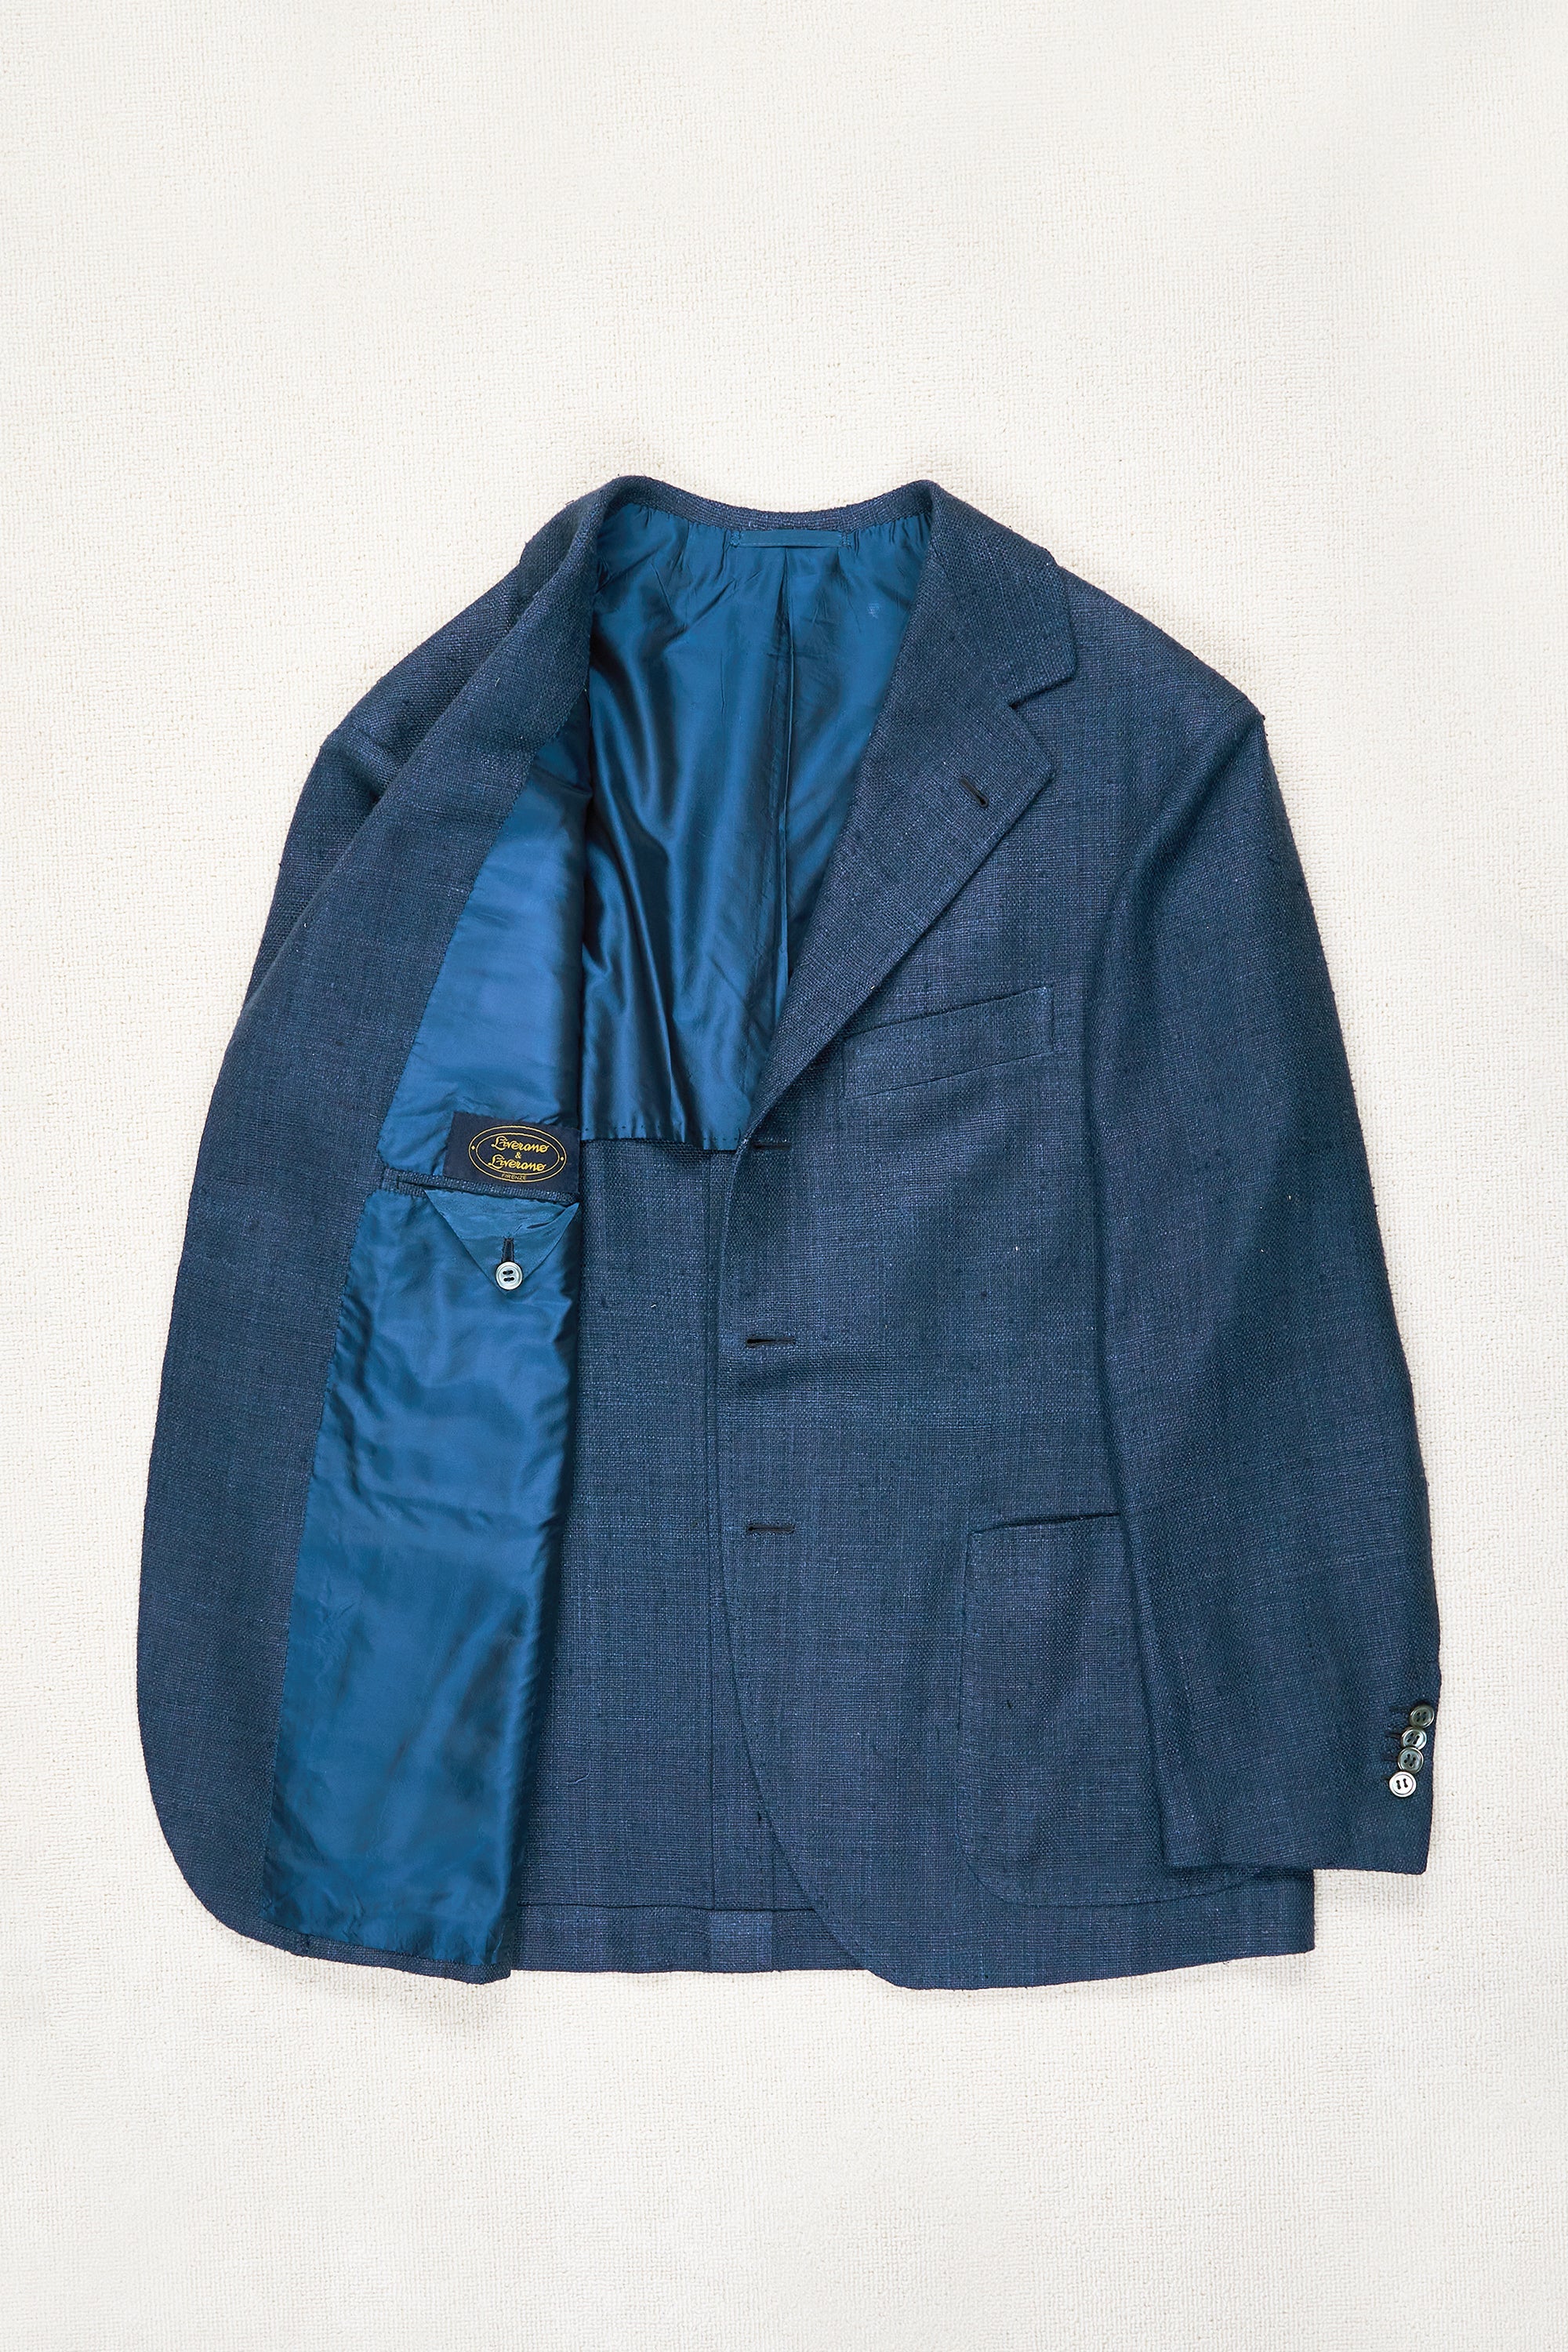 Liverano & Liverano Blue Shantung Silk Sport Coat Bespoke